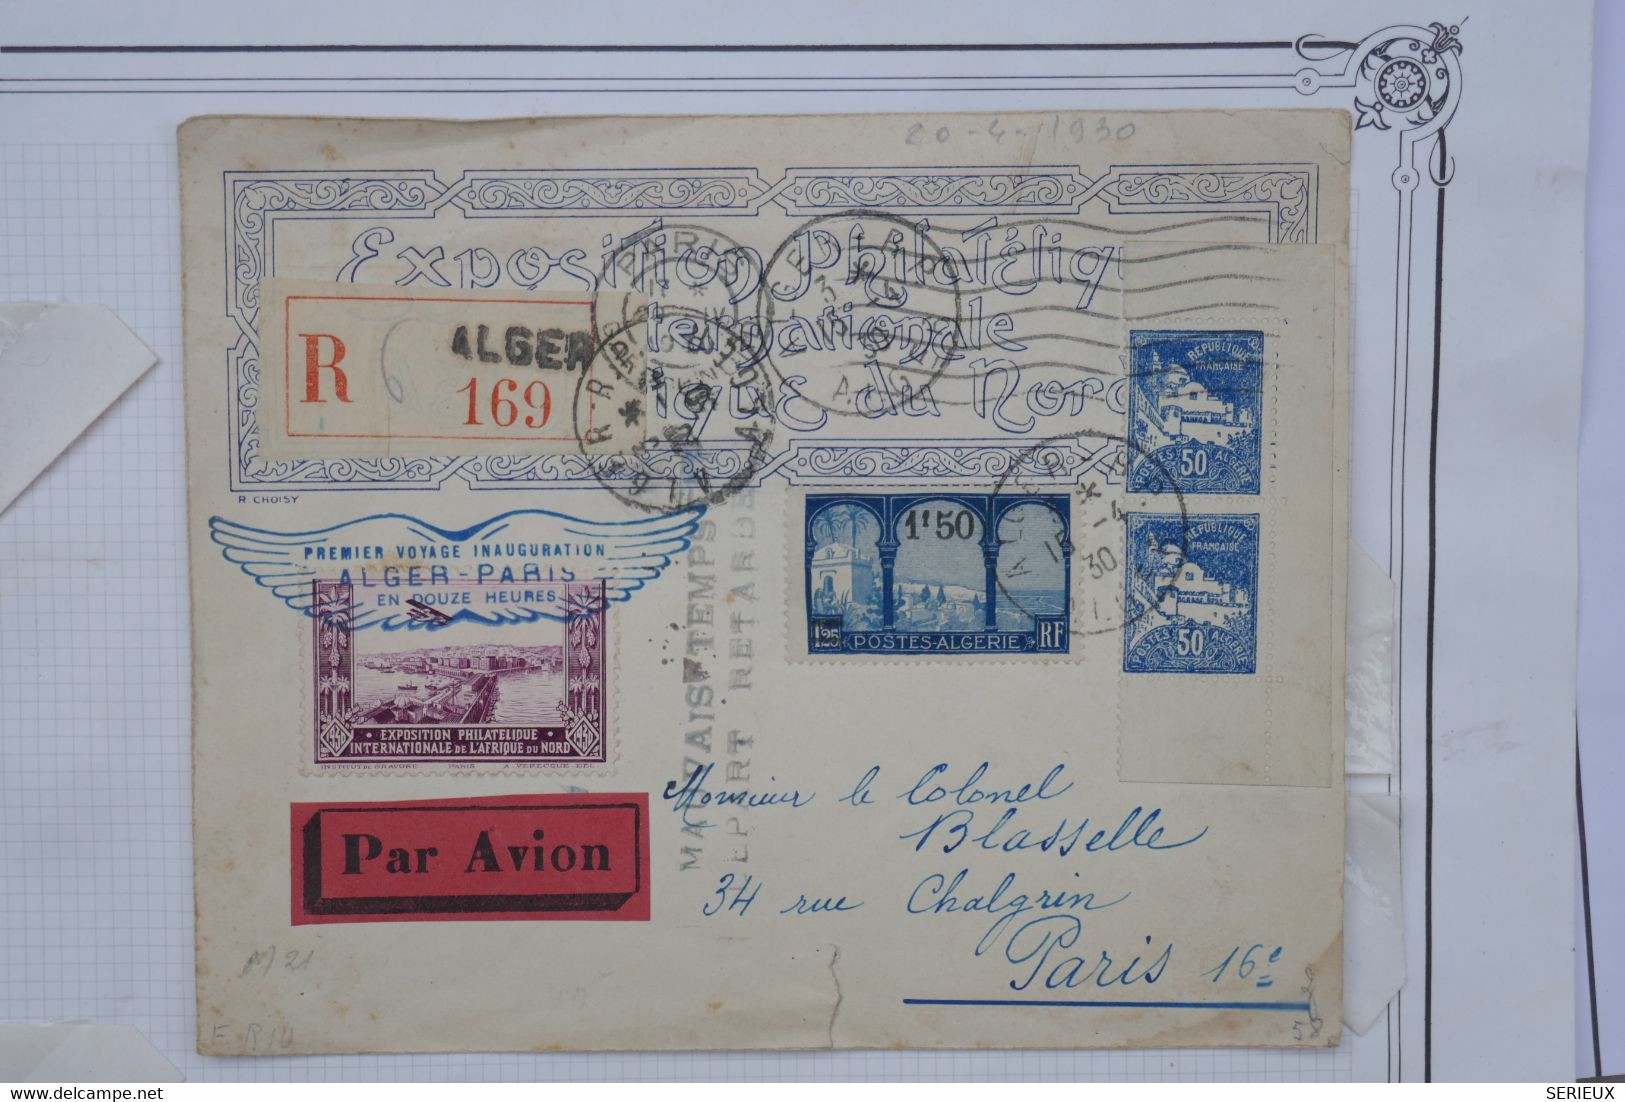 AU10 ALGERIE FRANCE BELLE LETTRE RARE 1930 IER VOL  ALGER PARIS +MAUVAIS TEMPS DEPART RETARDé +AFFRANCH. PLAISANT - Poste Aérienne